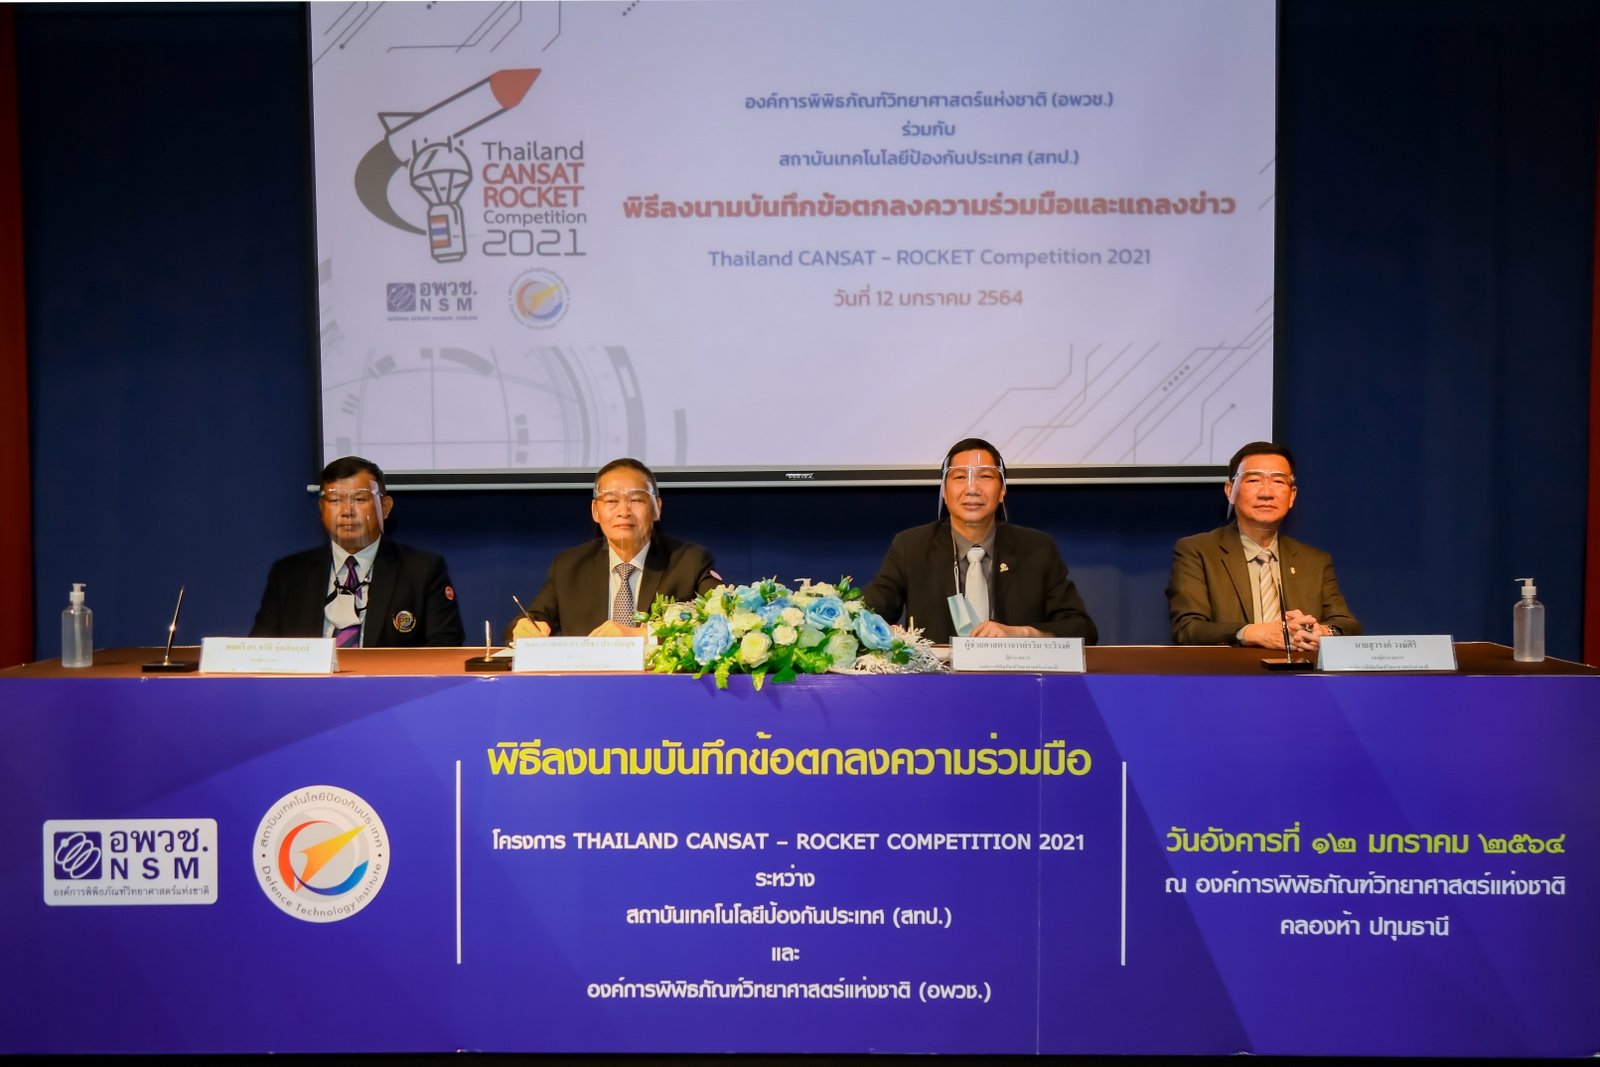 อพวช. ร่วมกับ สทป.  ลงนามความร่วมมือ  เตรียมจัดโครงการ THAILAND CANSAT – ROCKET COMPETITION 2021